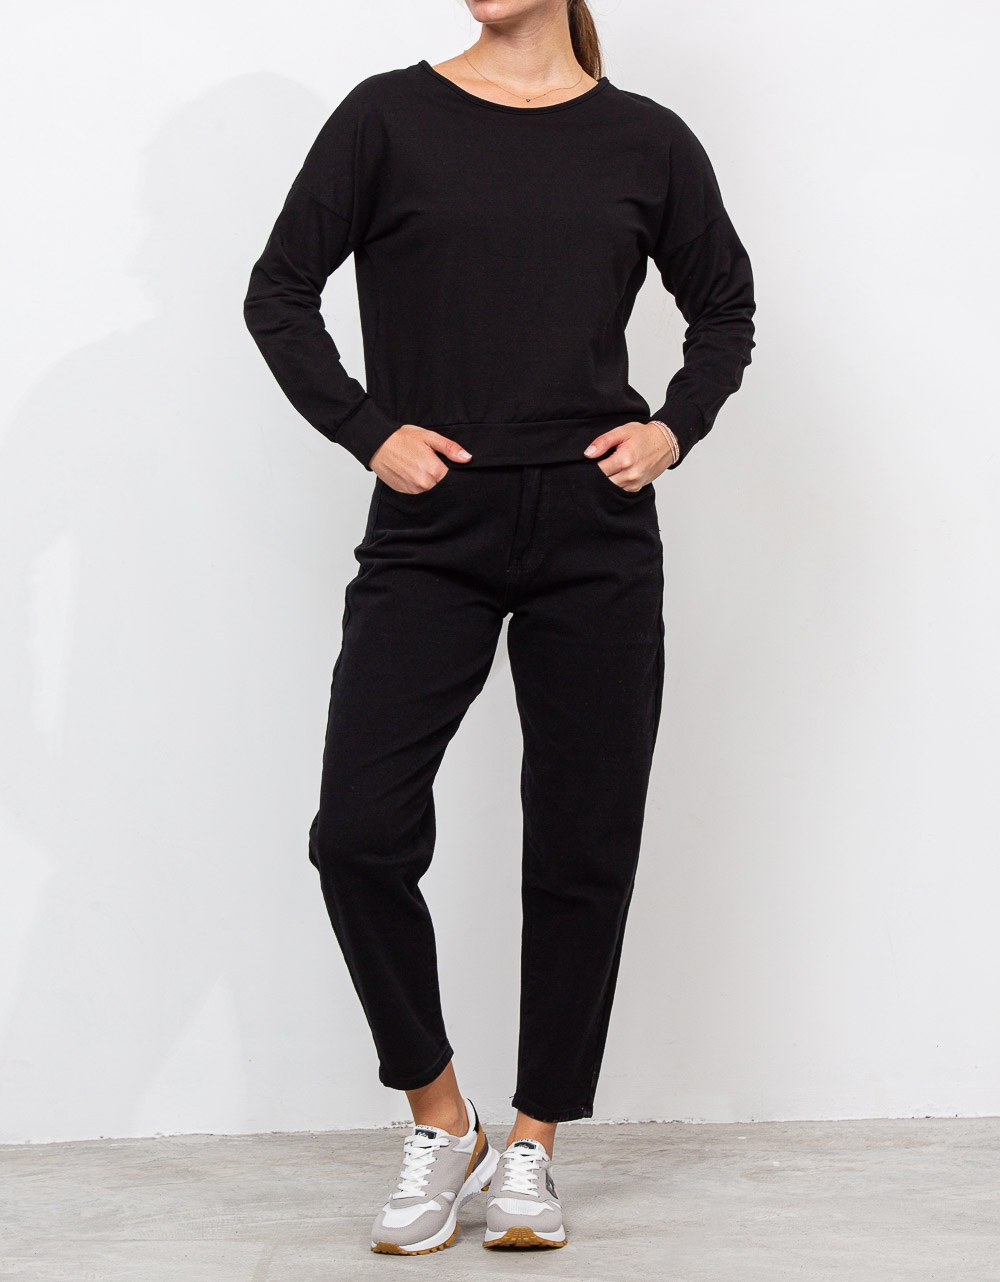 Εικόνα από Γυναικεία μπλούζα φούτερ με αλυσίδα Μαύρο